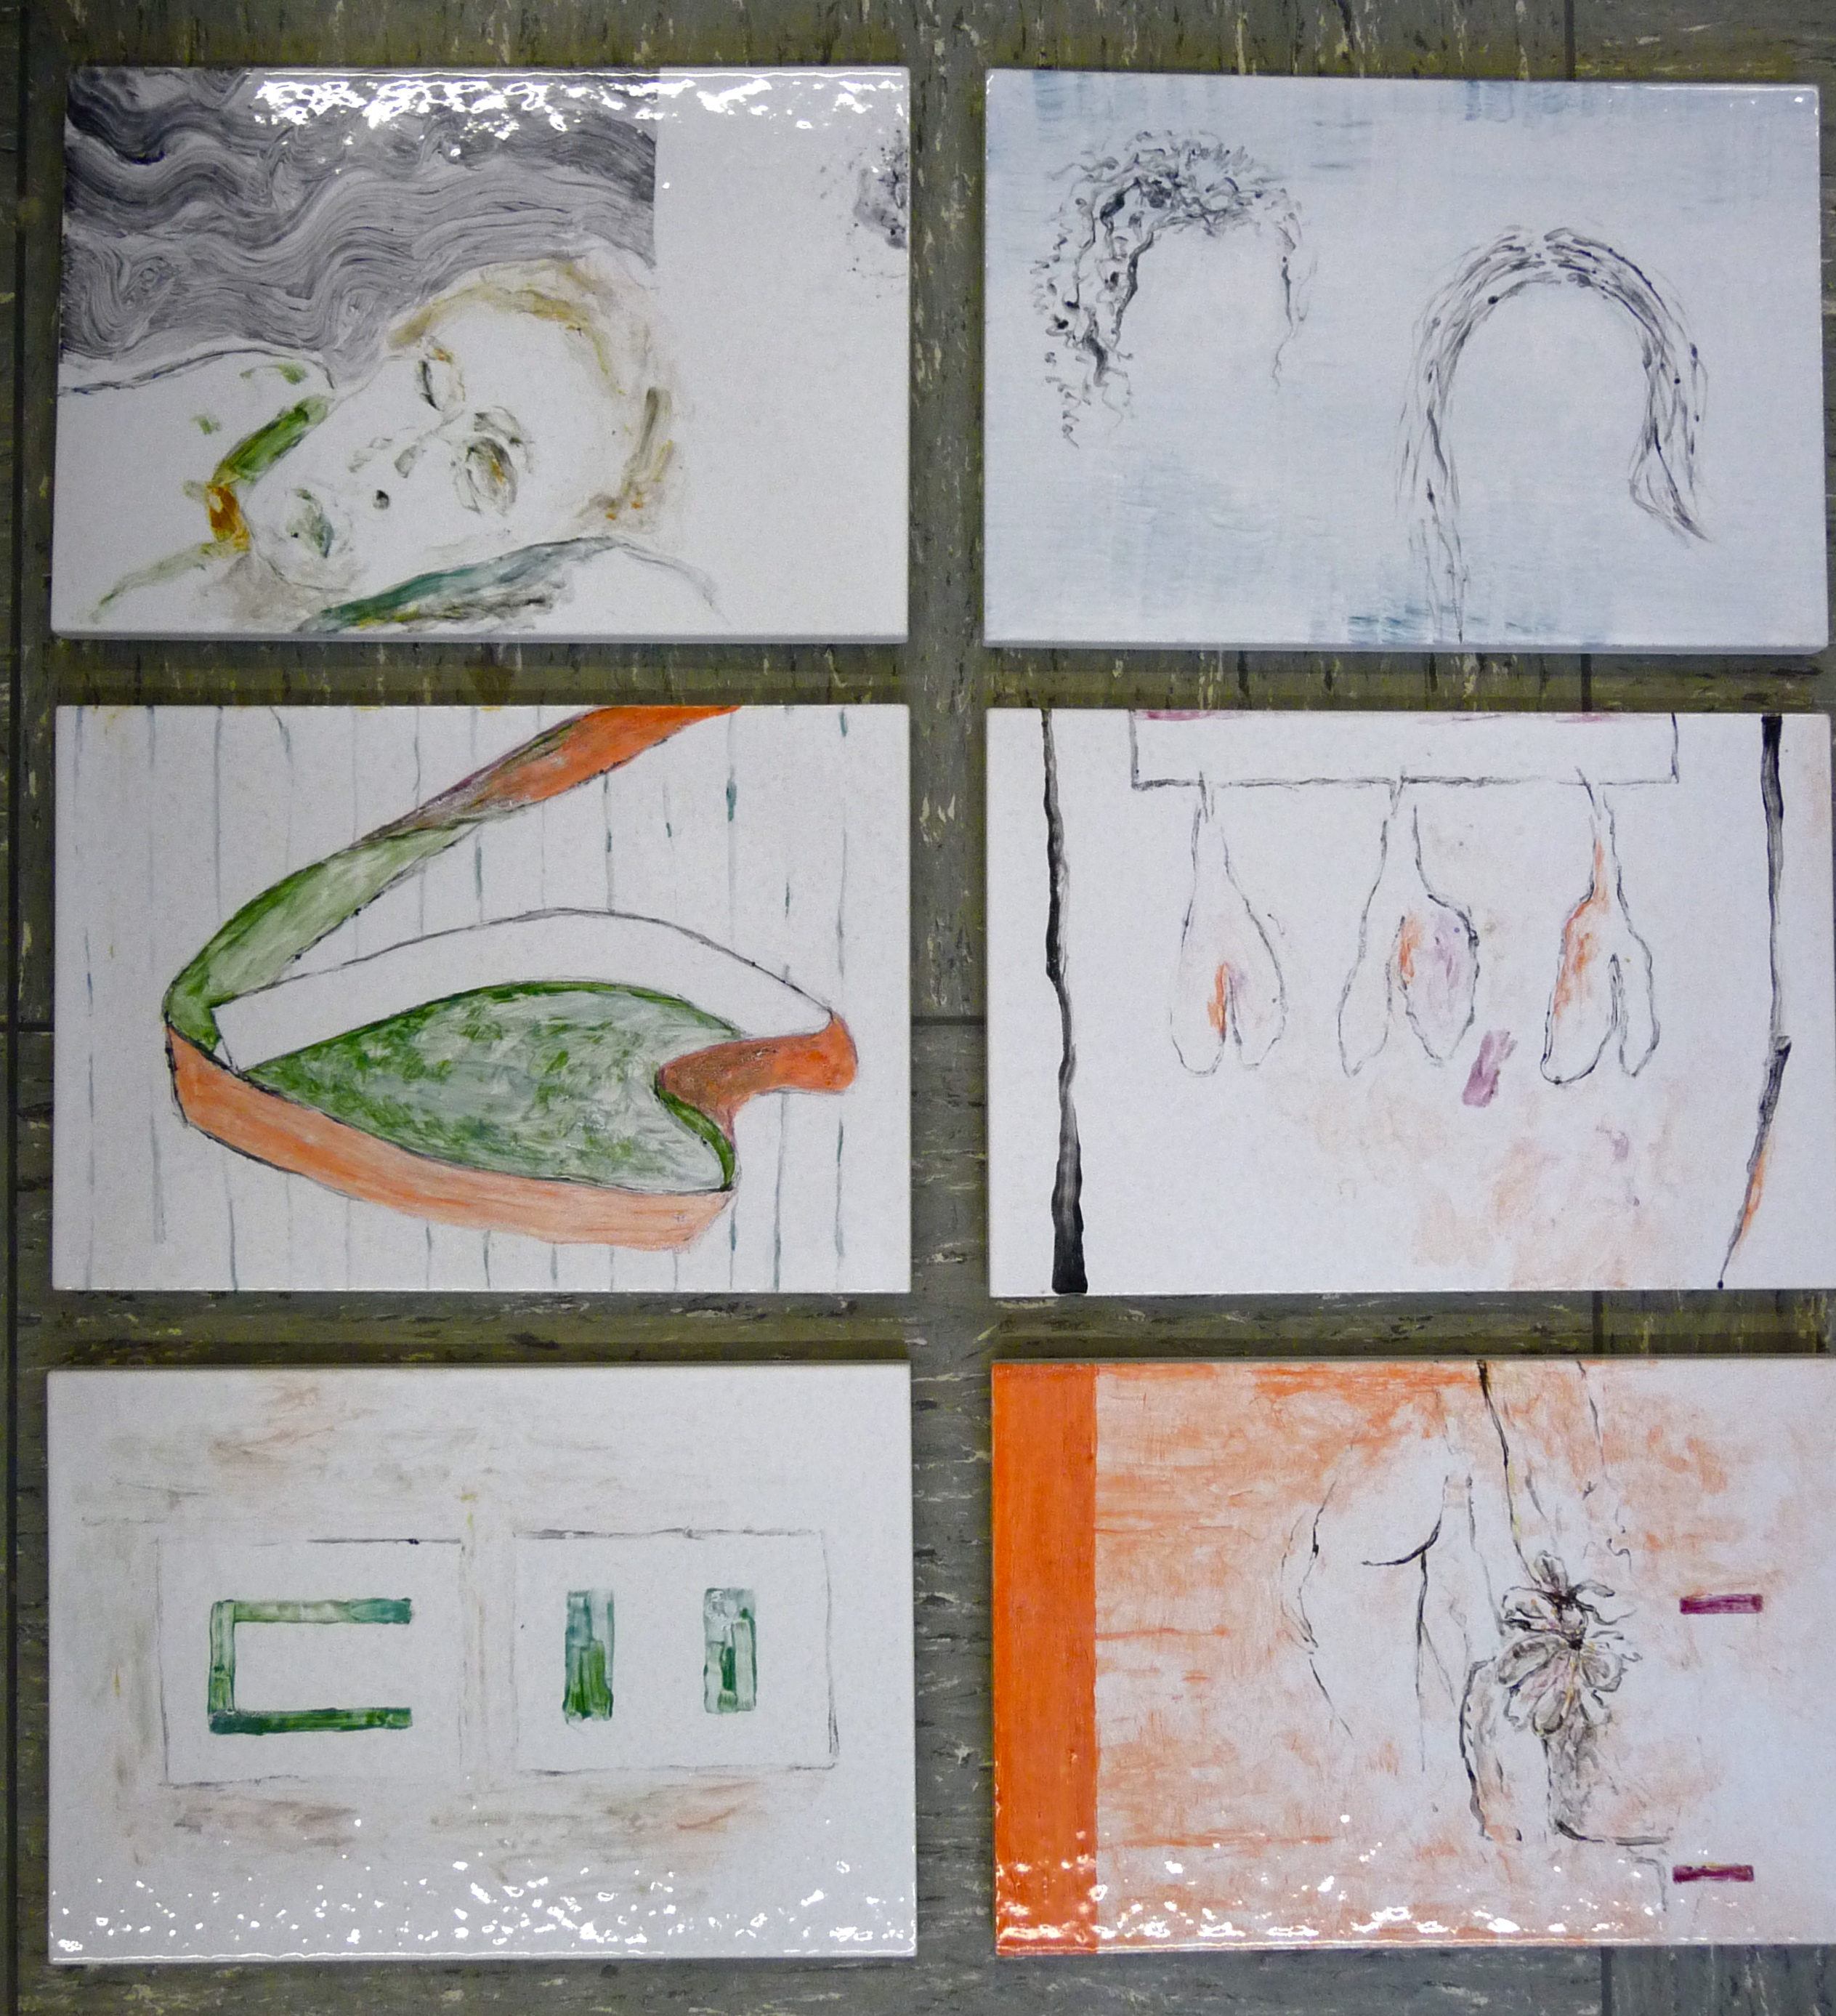 Fayencefliesen, Teil 2, je 22 x 32,5 cm, 2016, Erwin Holl